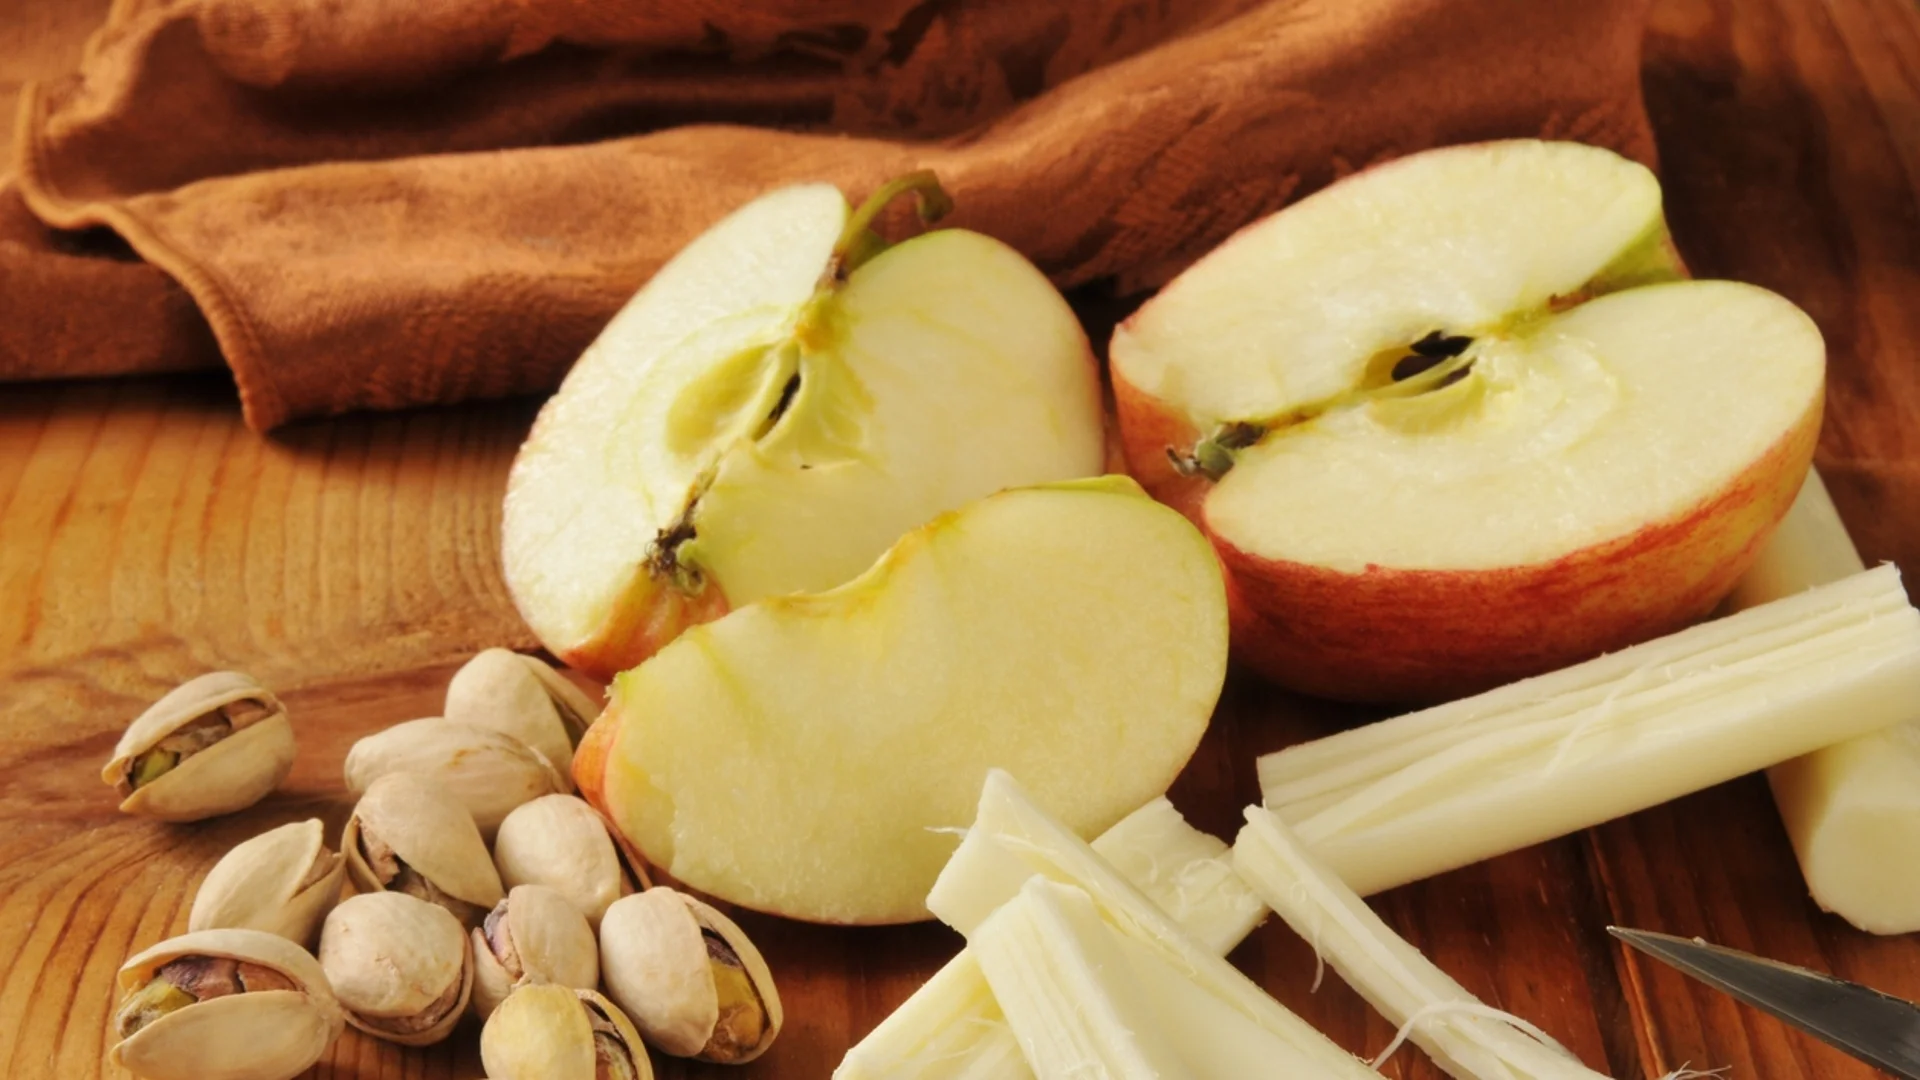 Лекар: Яжте ябълките така, за да са най-полезни за кръвта и имунитета